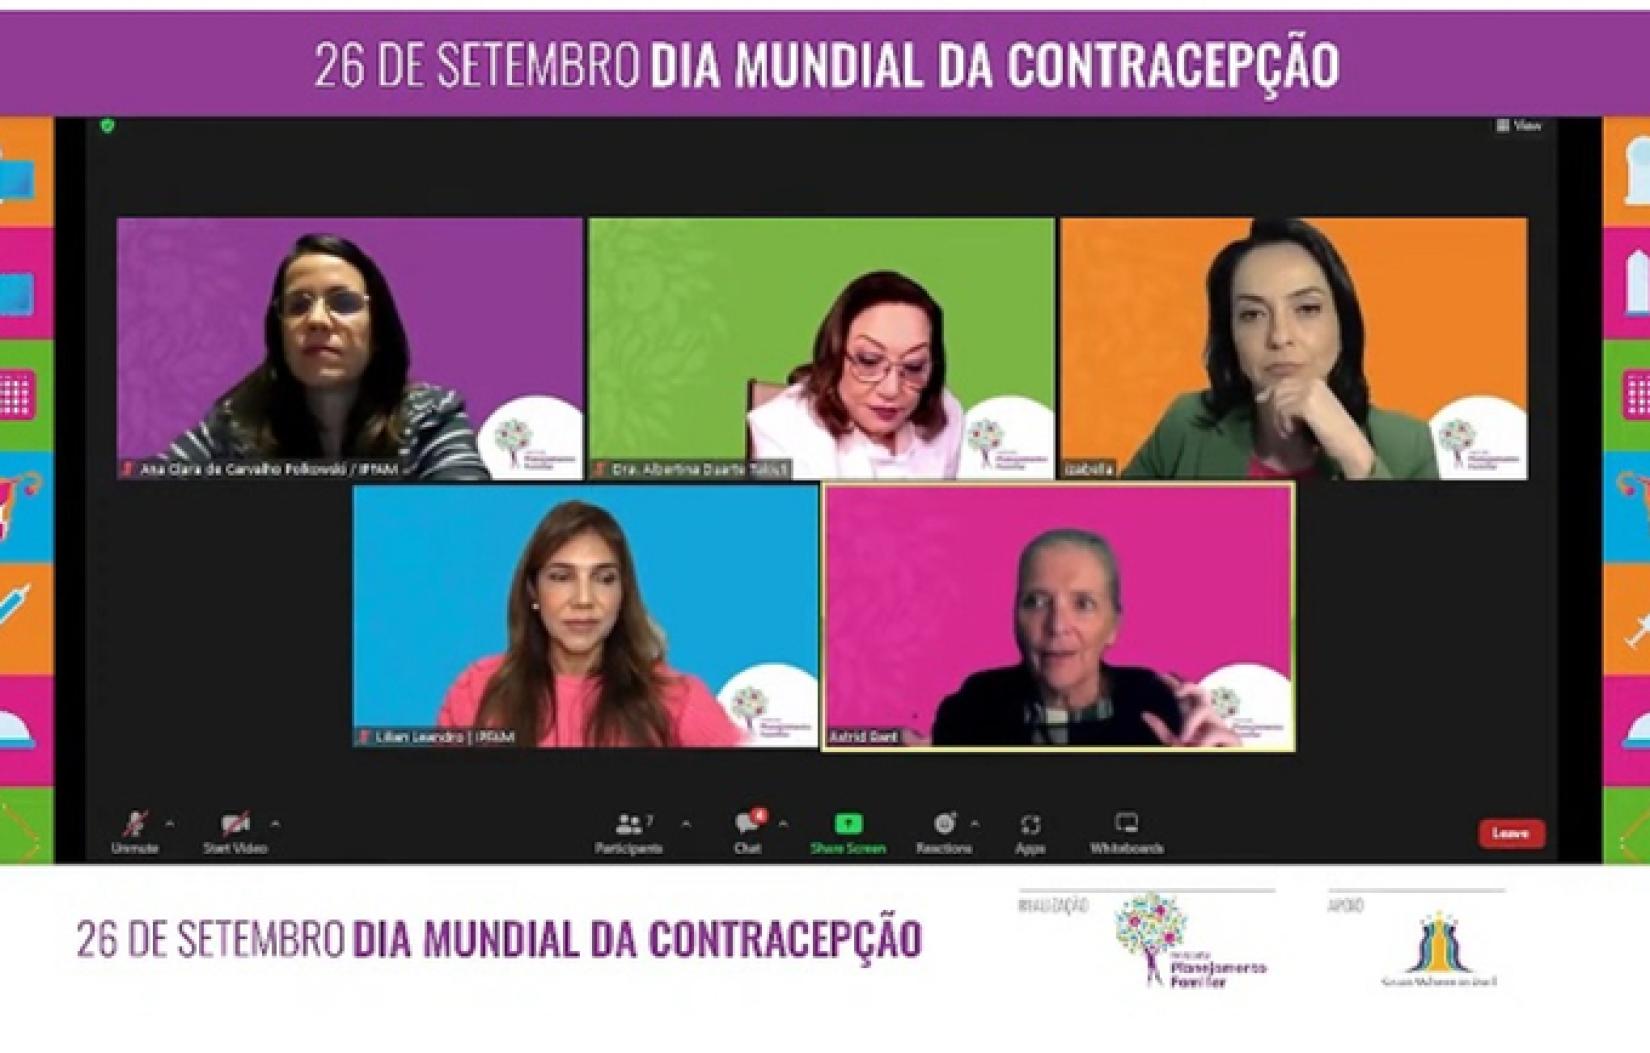 Representante do UNFPA, Astrid Bant participa de bate-papo sobre contracepção.